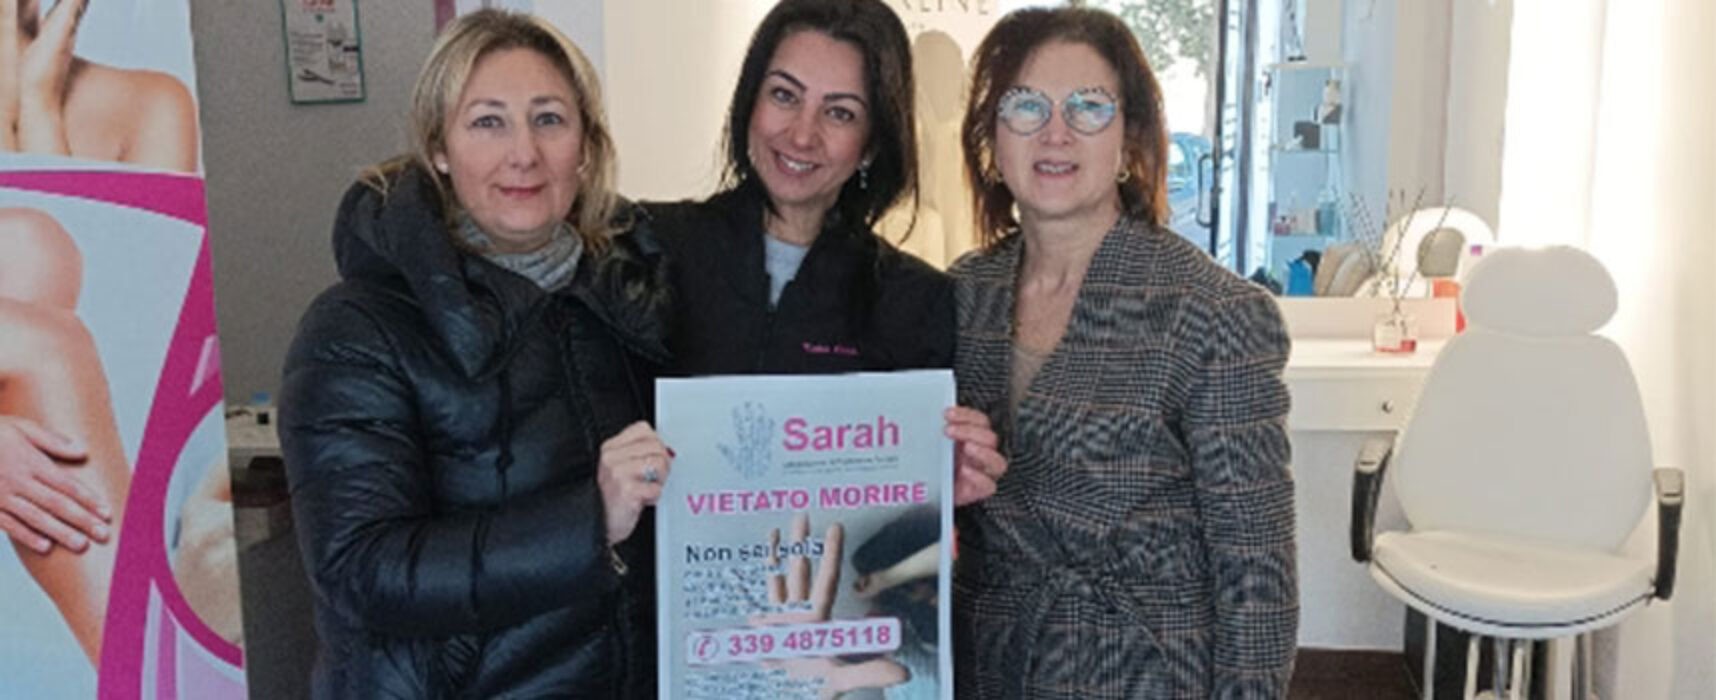 Associazione antiviolenza Sarah riprende il progetto “Brutta Piega”